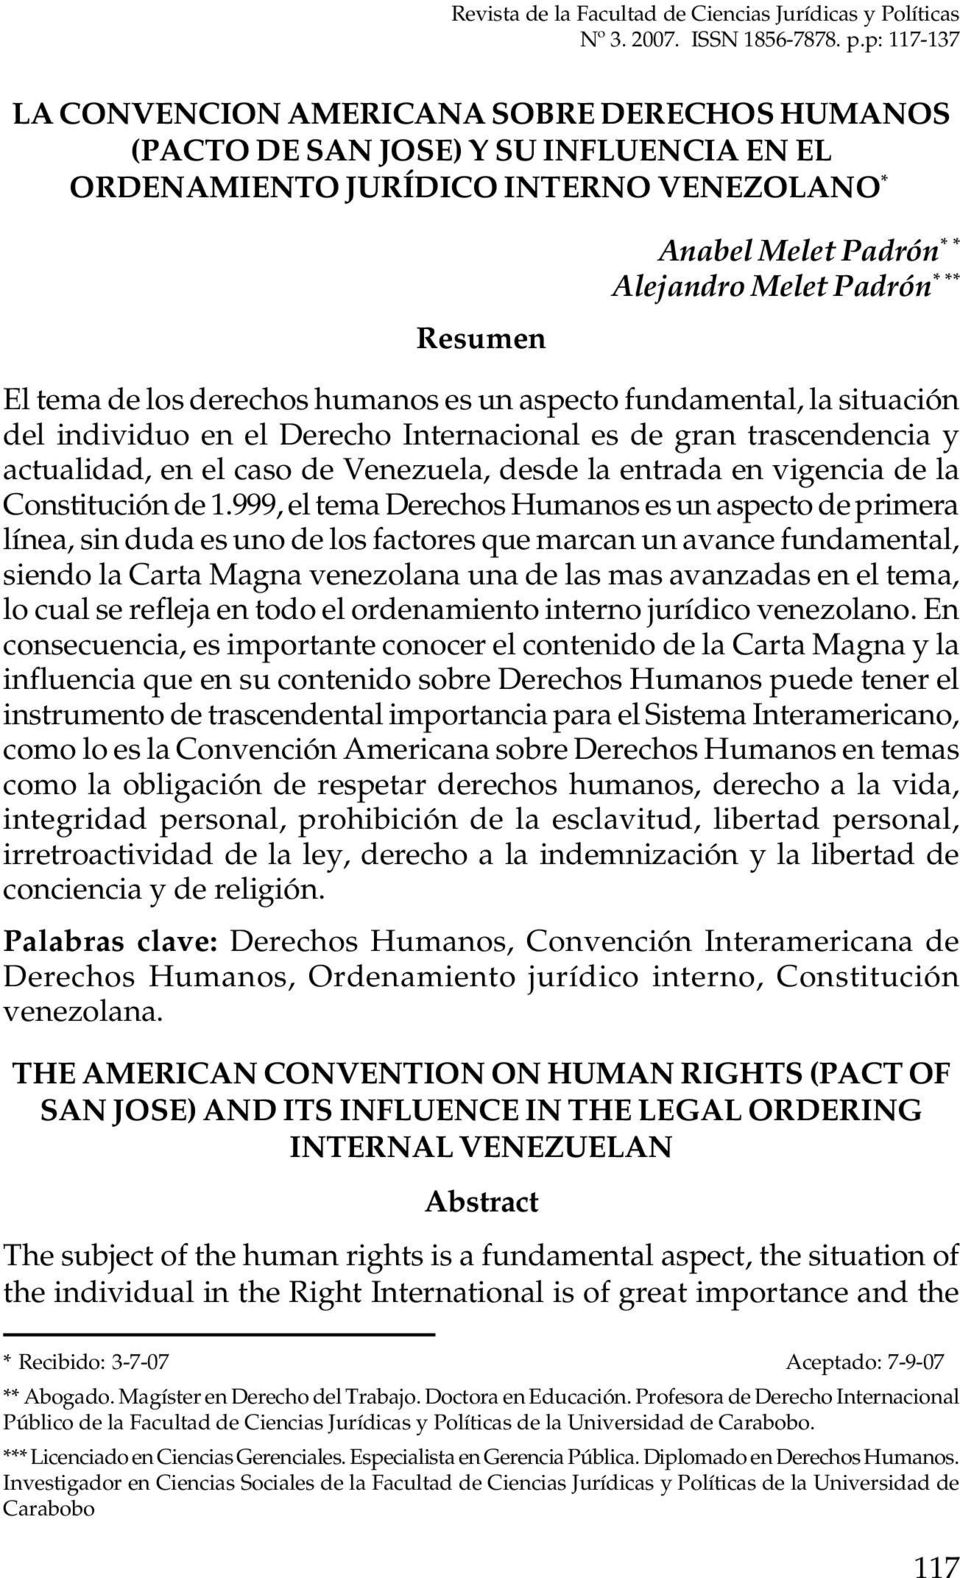 *** El tema de los derechos humanos es un aspecto fundamental, la situación del individuo en el Derecho Internacional es de gran trascendencia y actualidad, en el caso de Venezuela, desde la entrada